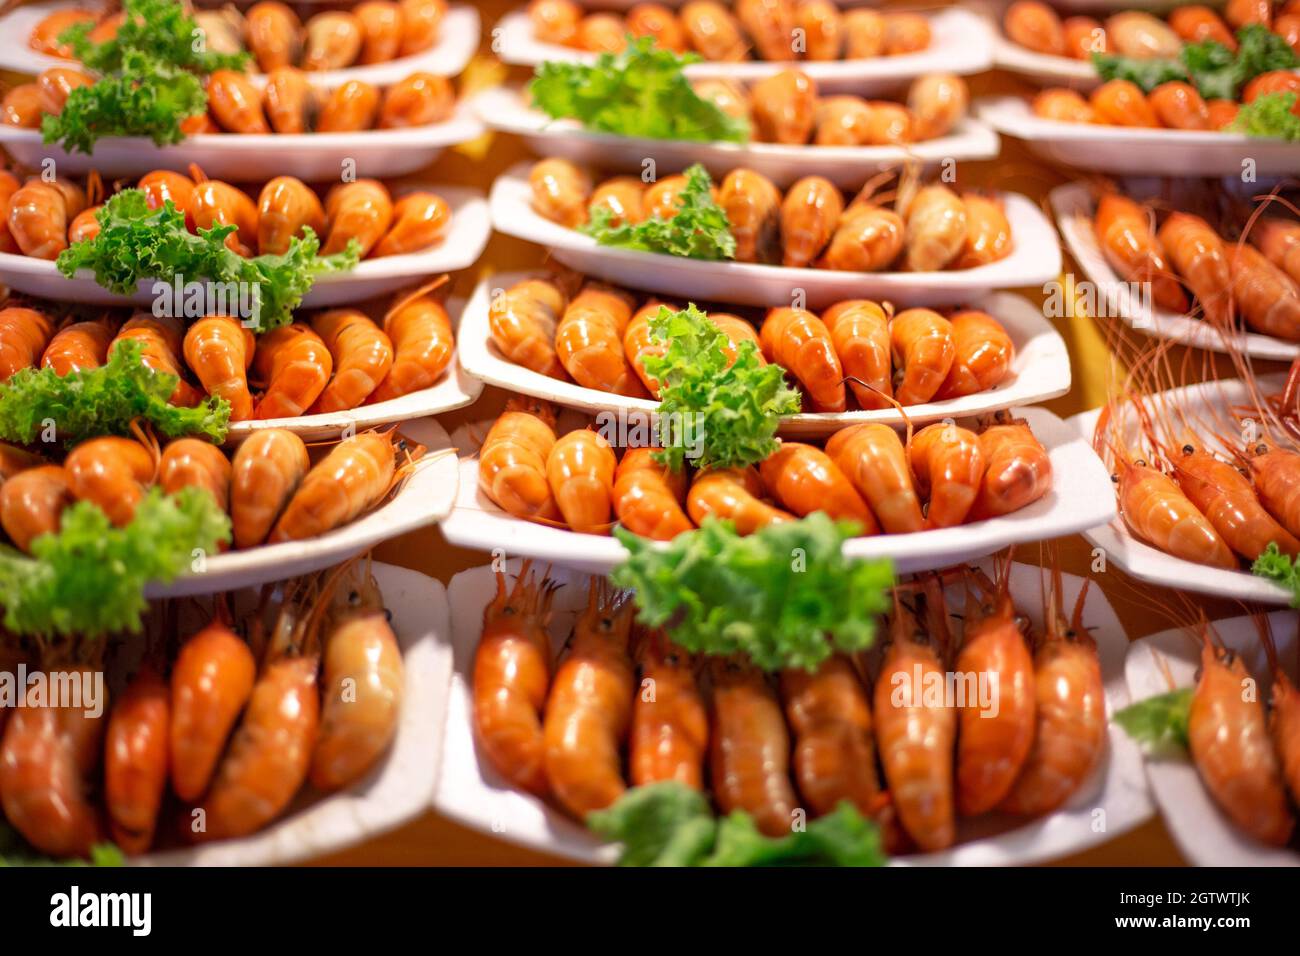 Marché de crevettes et fruits de mer cuits en Asie, cuisine traditionnelle Banque D'Images